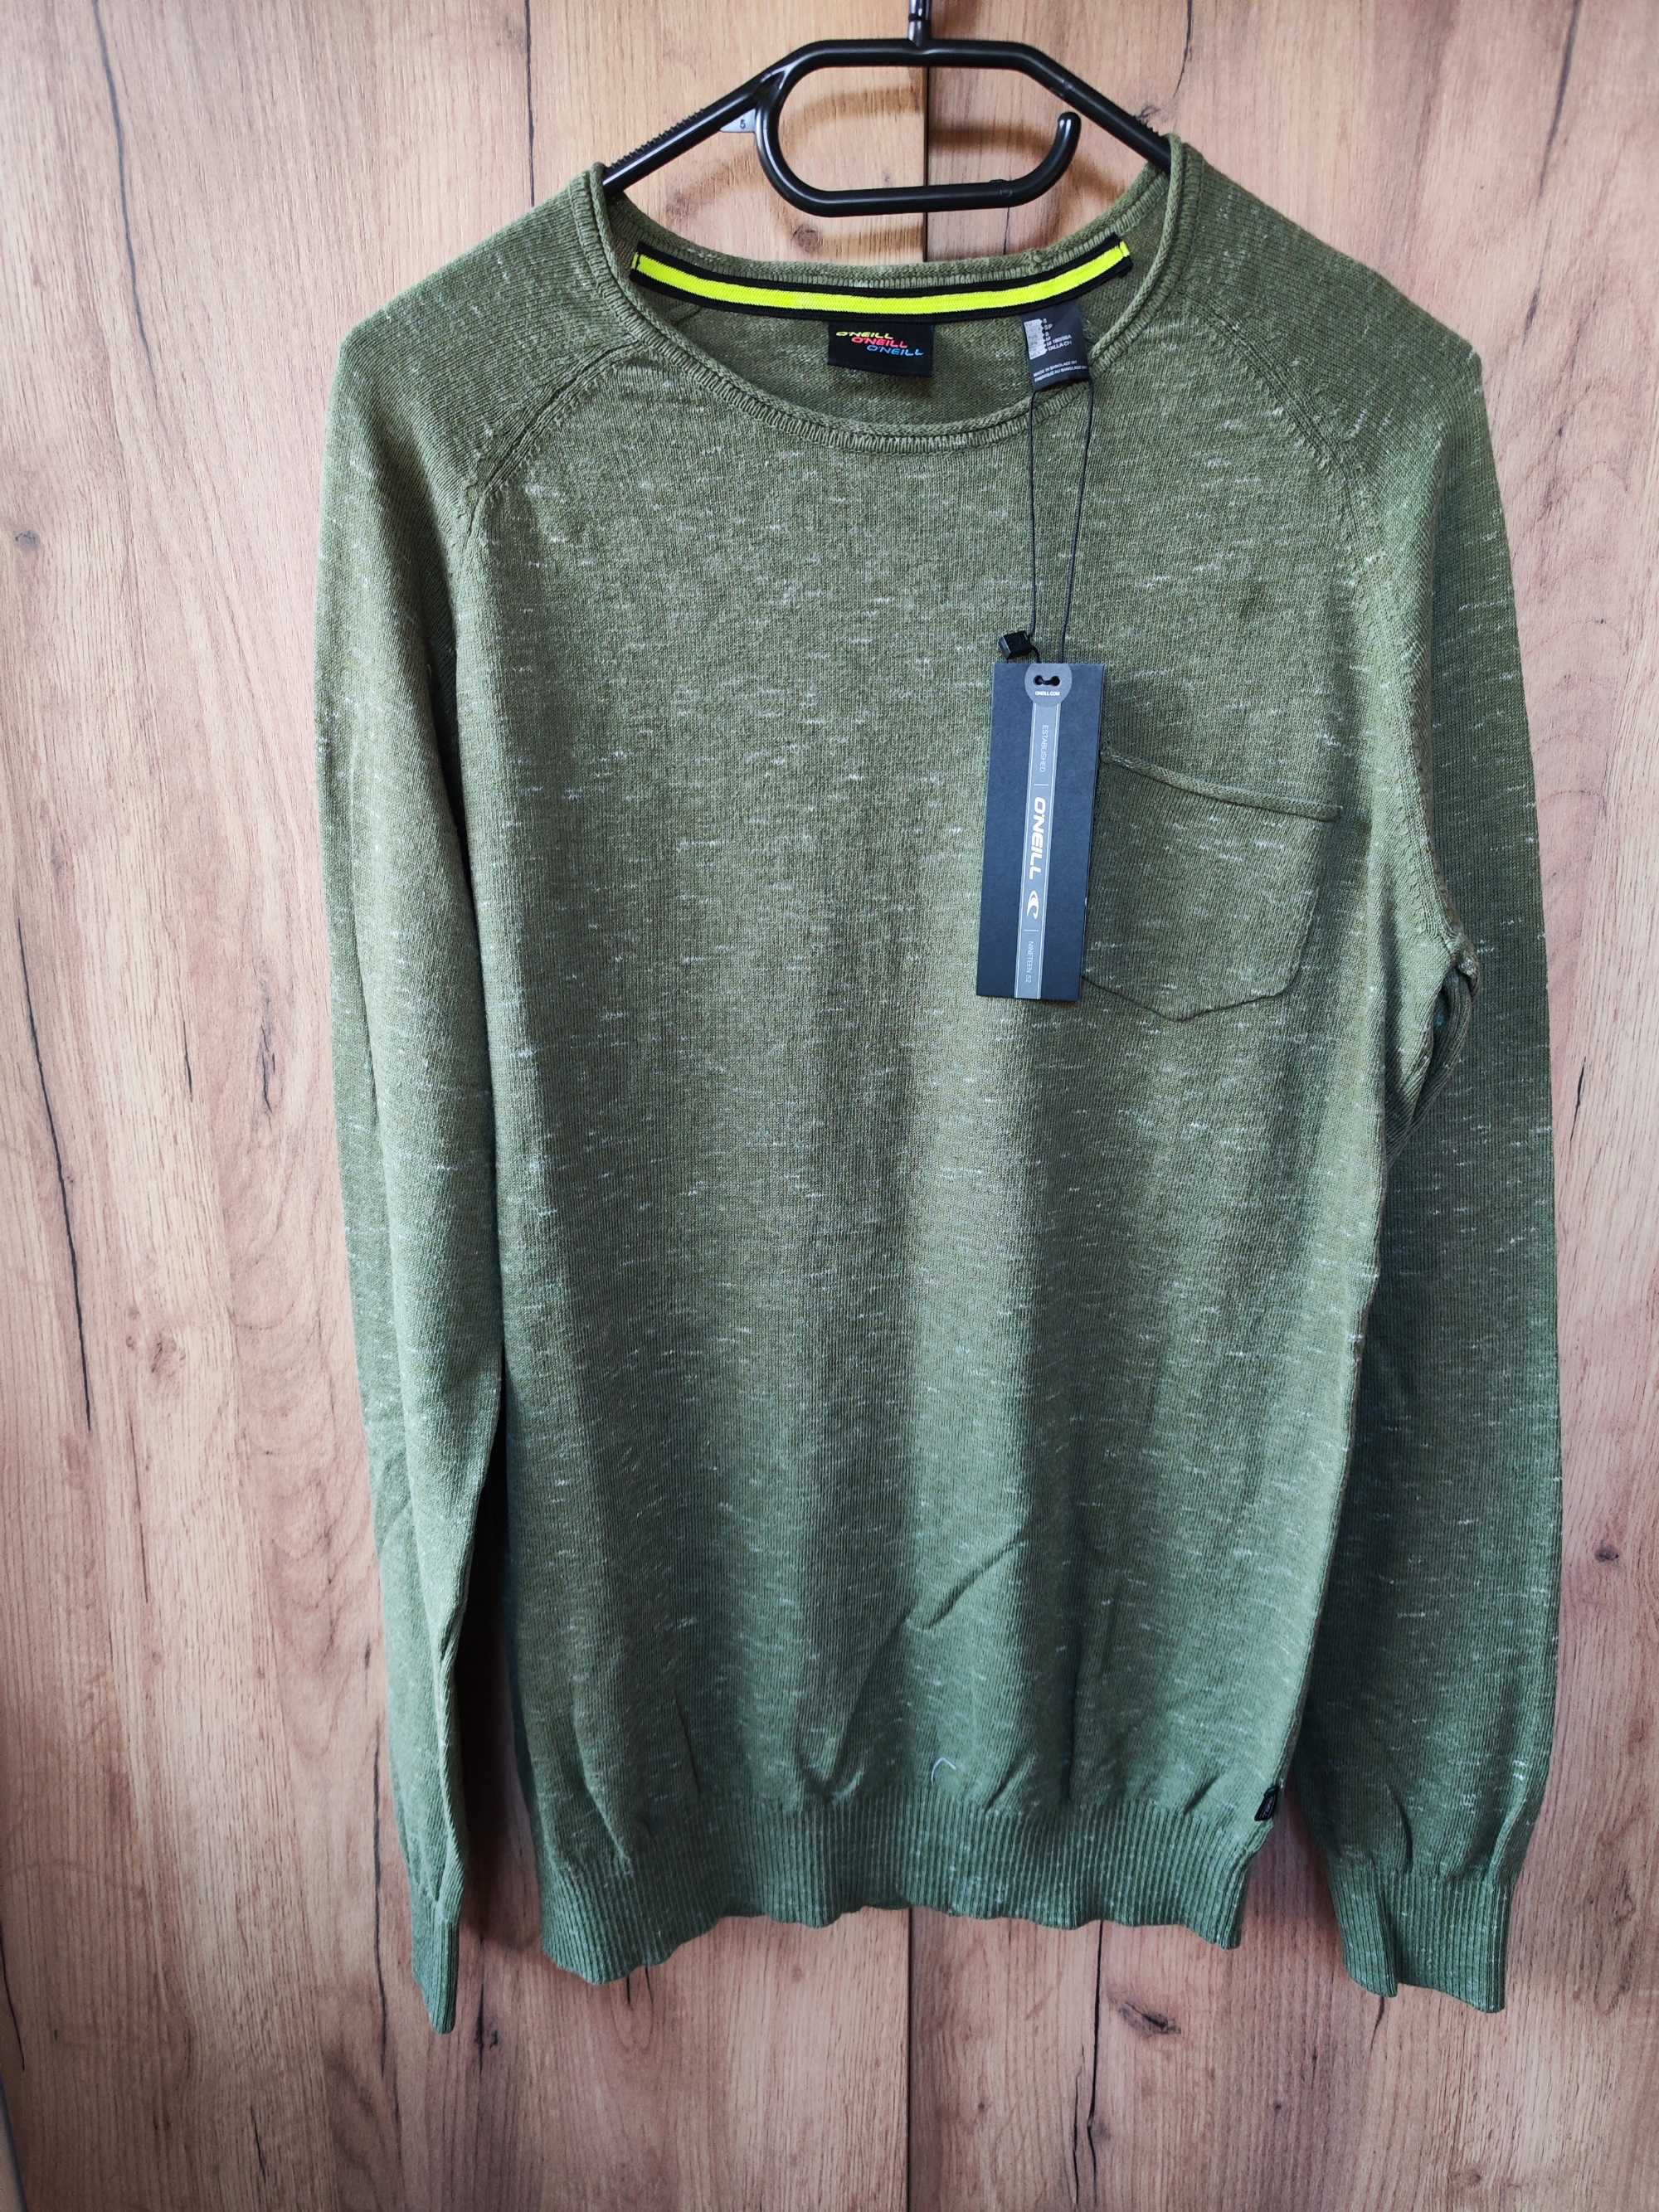 Sweter bawełniany firmy O'Neill, rozmiar S, nowy z metką, miękki i mił